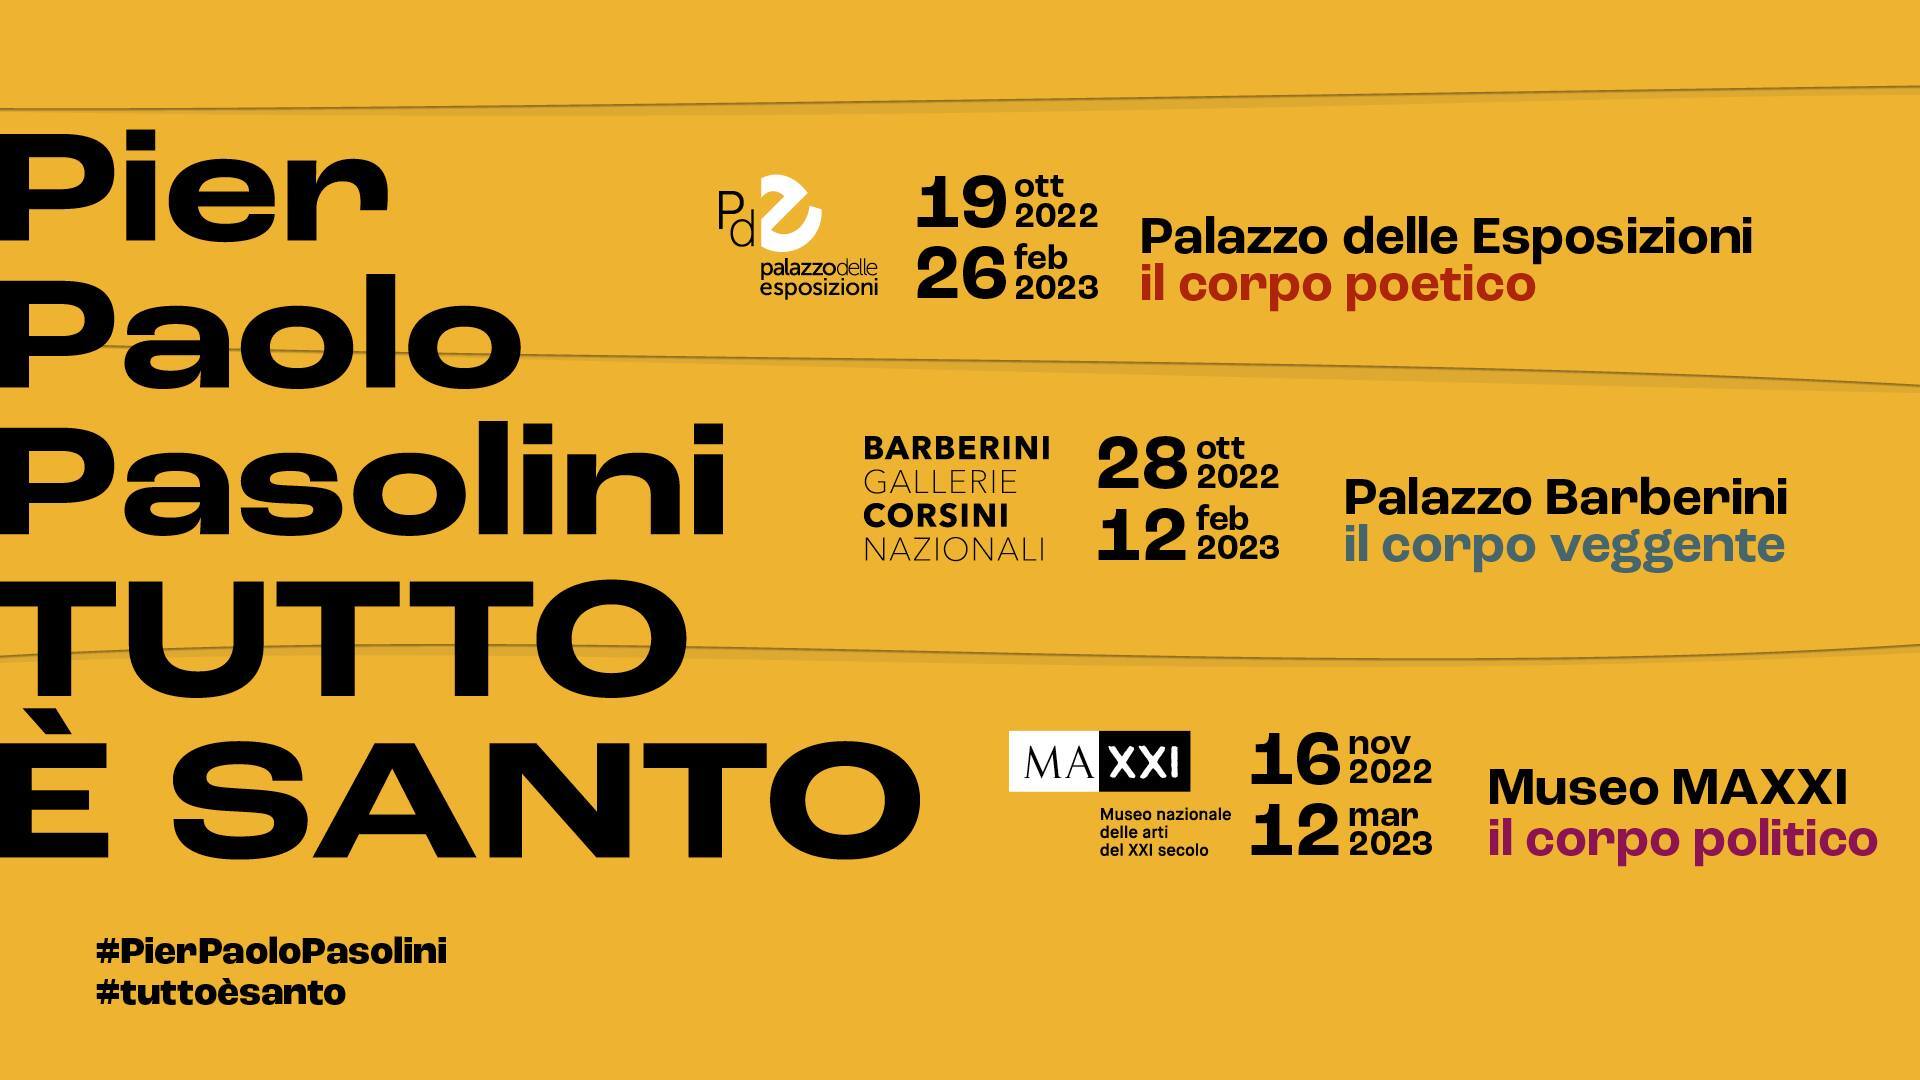 Pier Paolo Pasolini. TUTTO È SANTO - Il corpo veggente" in mostra a Roma, Palazzo Barberini